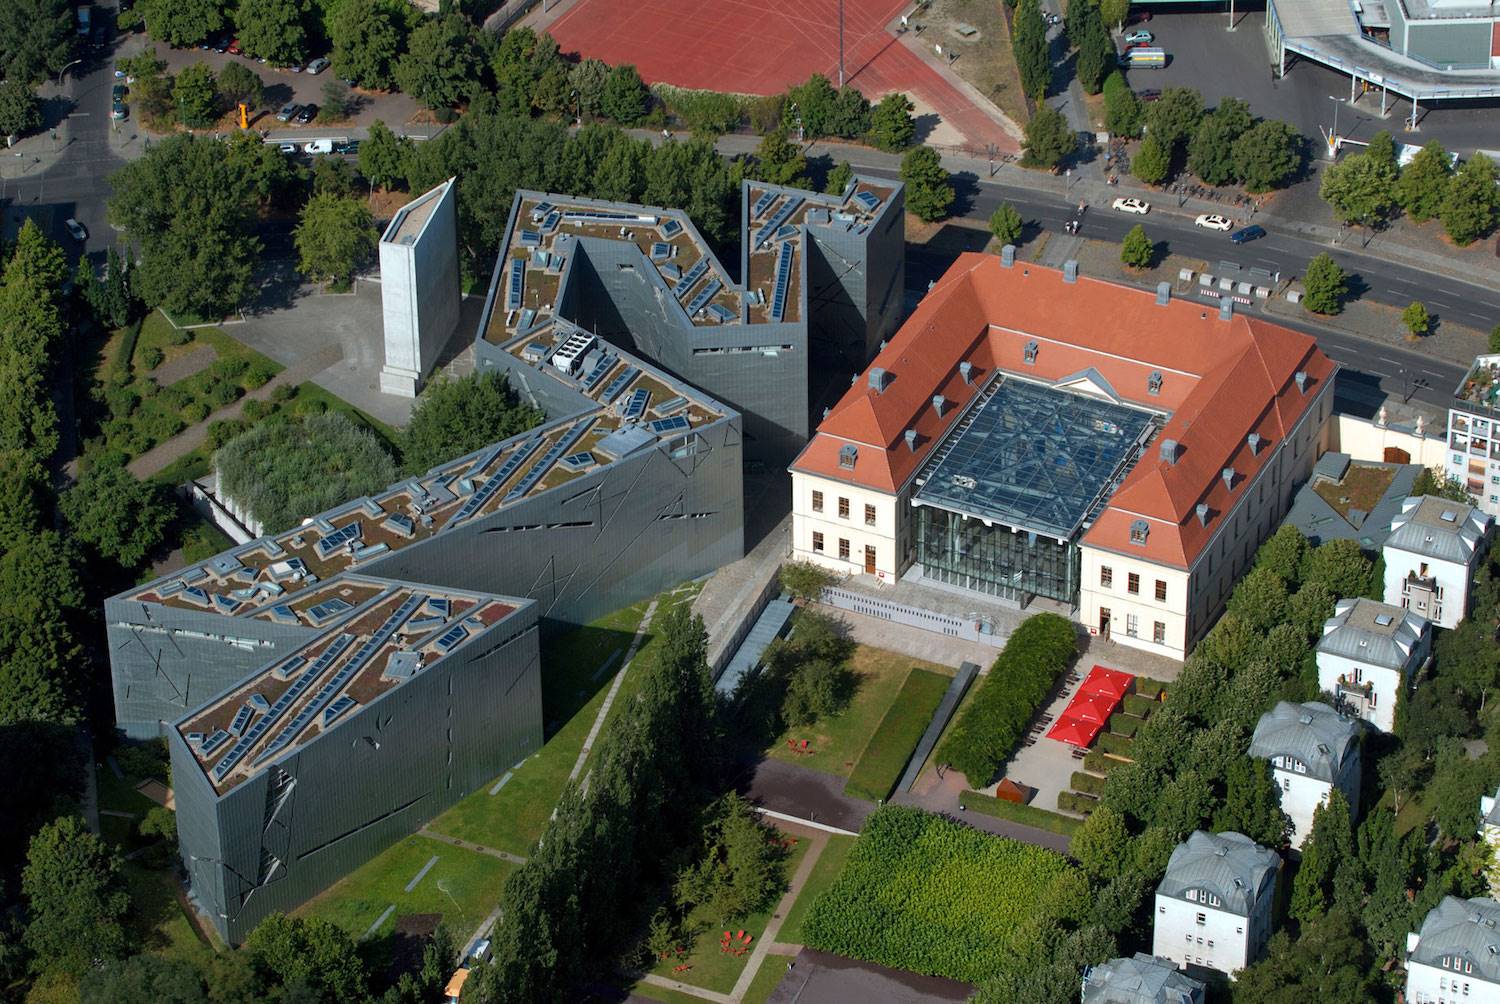 Vista aerea del museo del holocausto en Berlin Daniel Libeskind